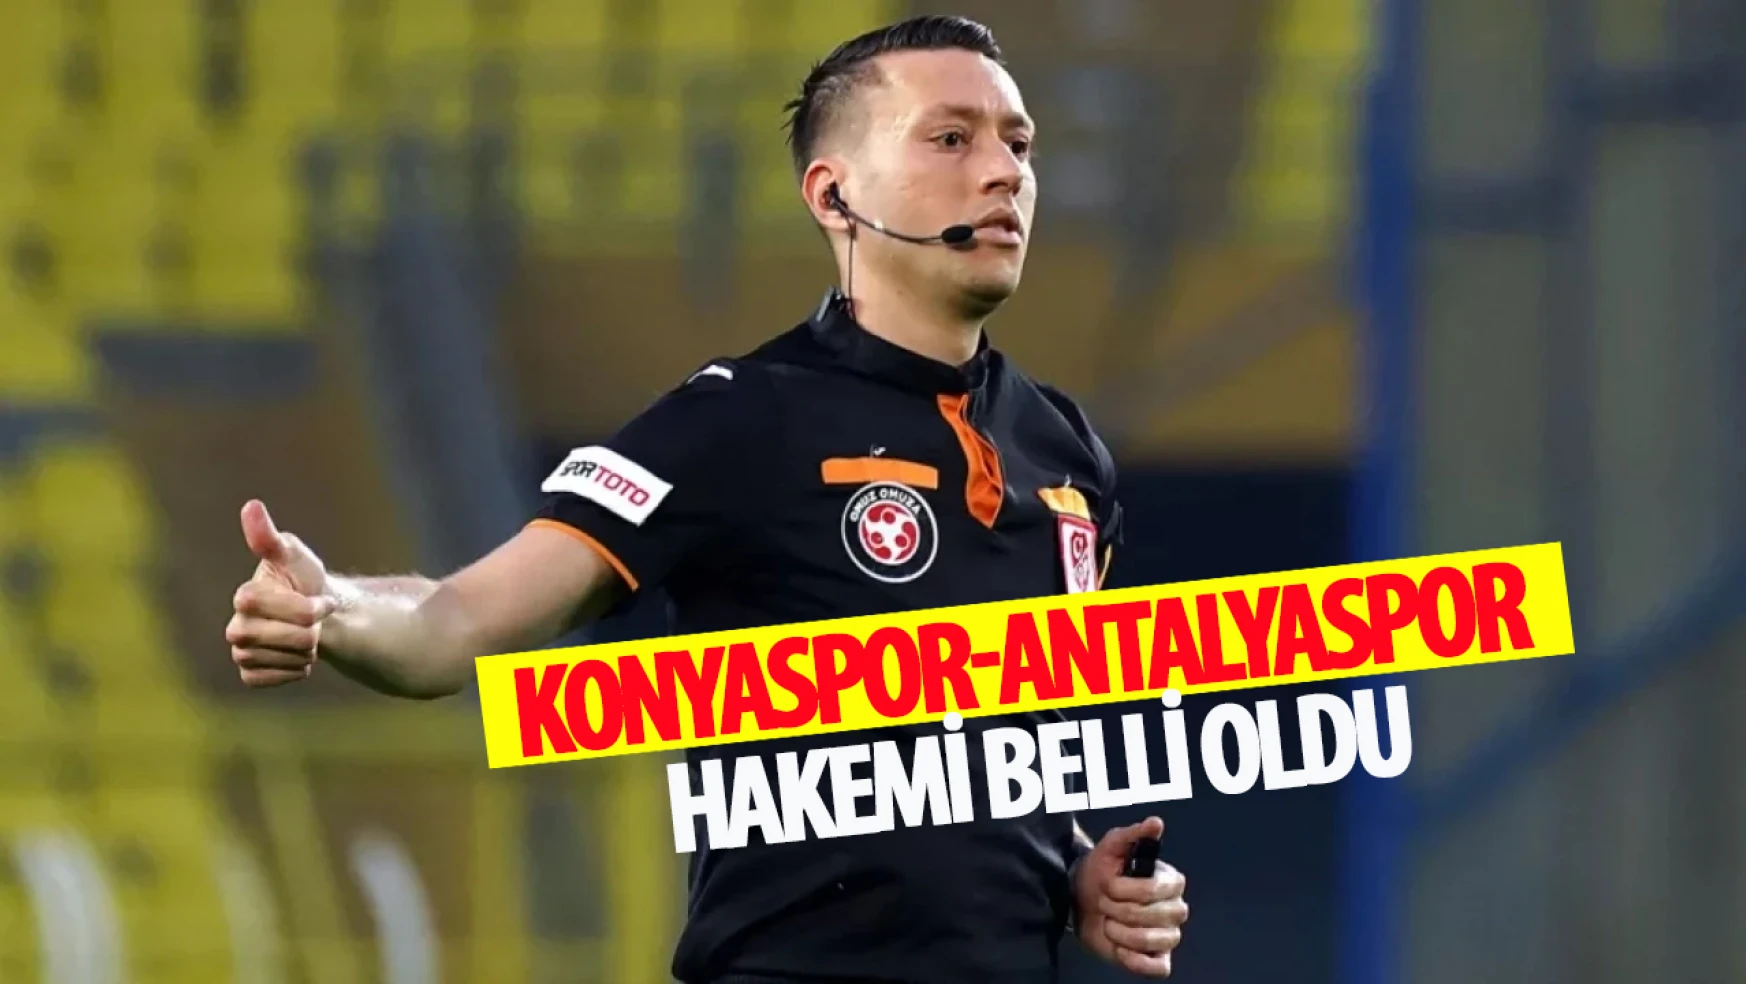 Konyaspor-Antalyaspor karşılaşmasının hakemi belli oldu!